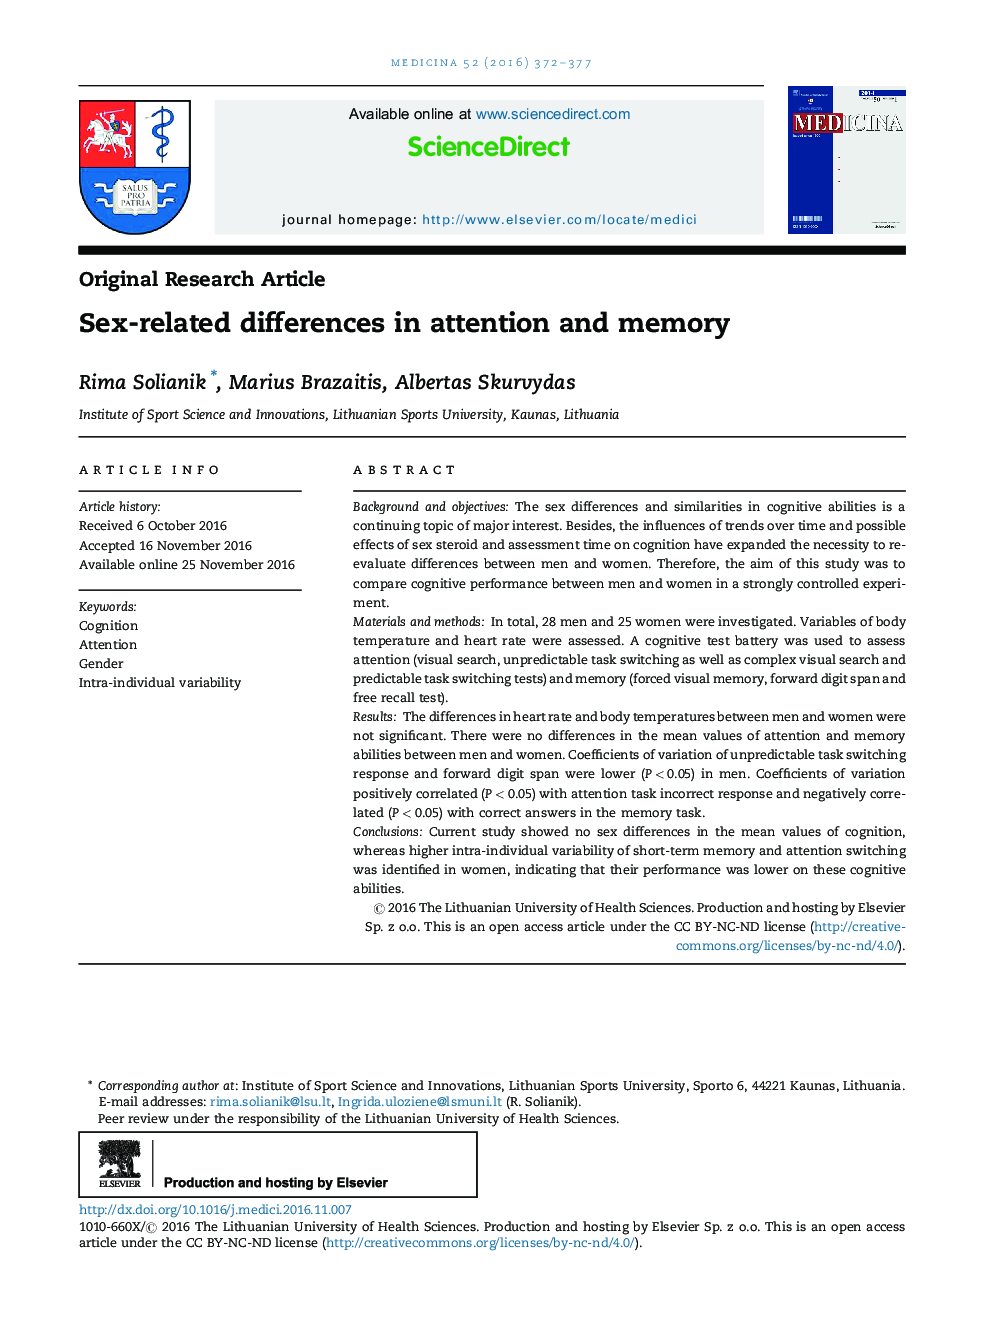 تفاوت های مرتبط با جنسیت در توجه و حافظه 